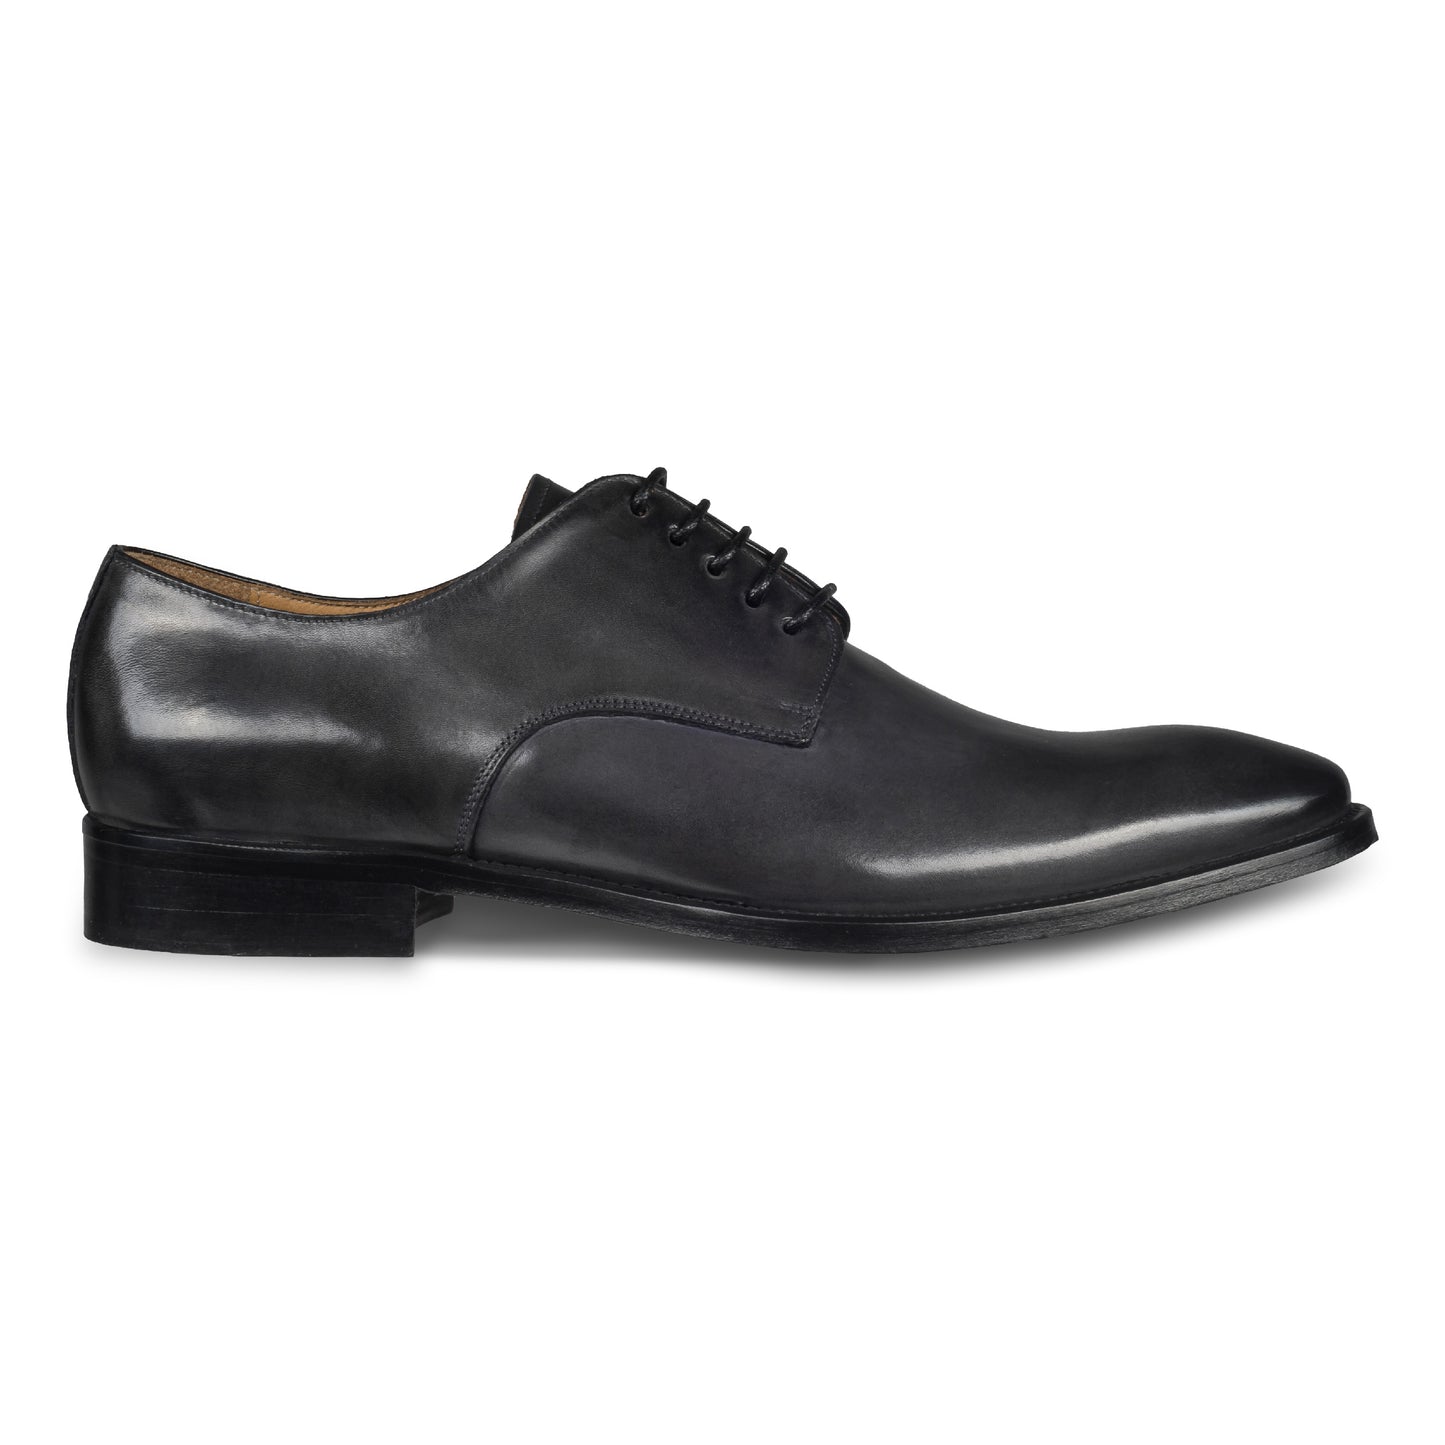 BRECOS – Italienische Herren Anzugschuhe, Plain Derby Schnürer in dunkel grau. Handgefertigt und durchgenäht. Seitliche Ansicht der Außenseite rechter Schuh.